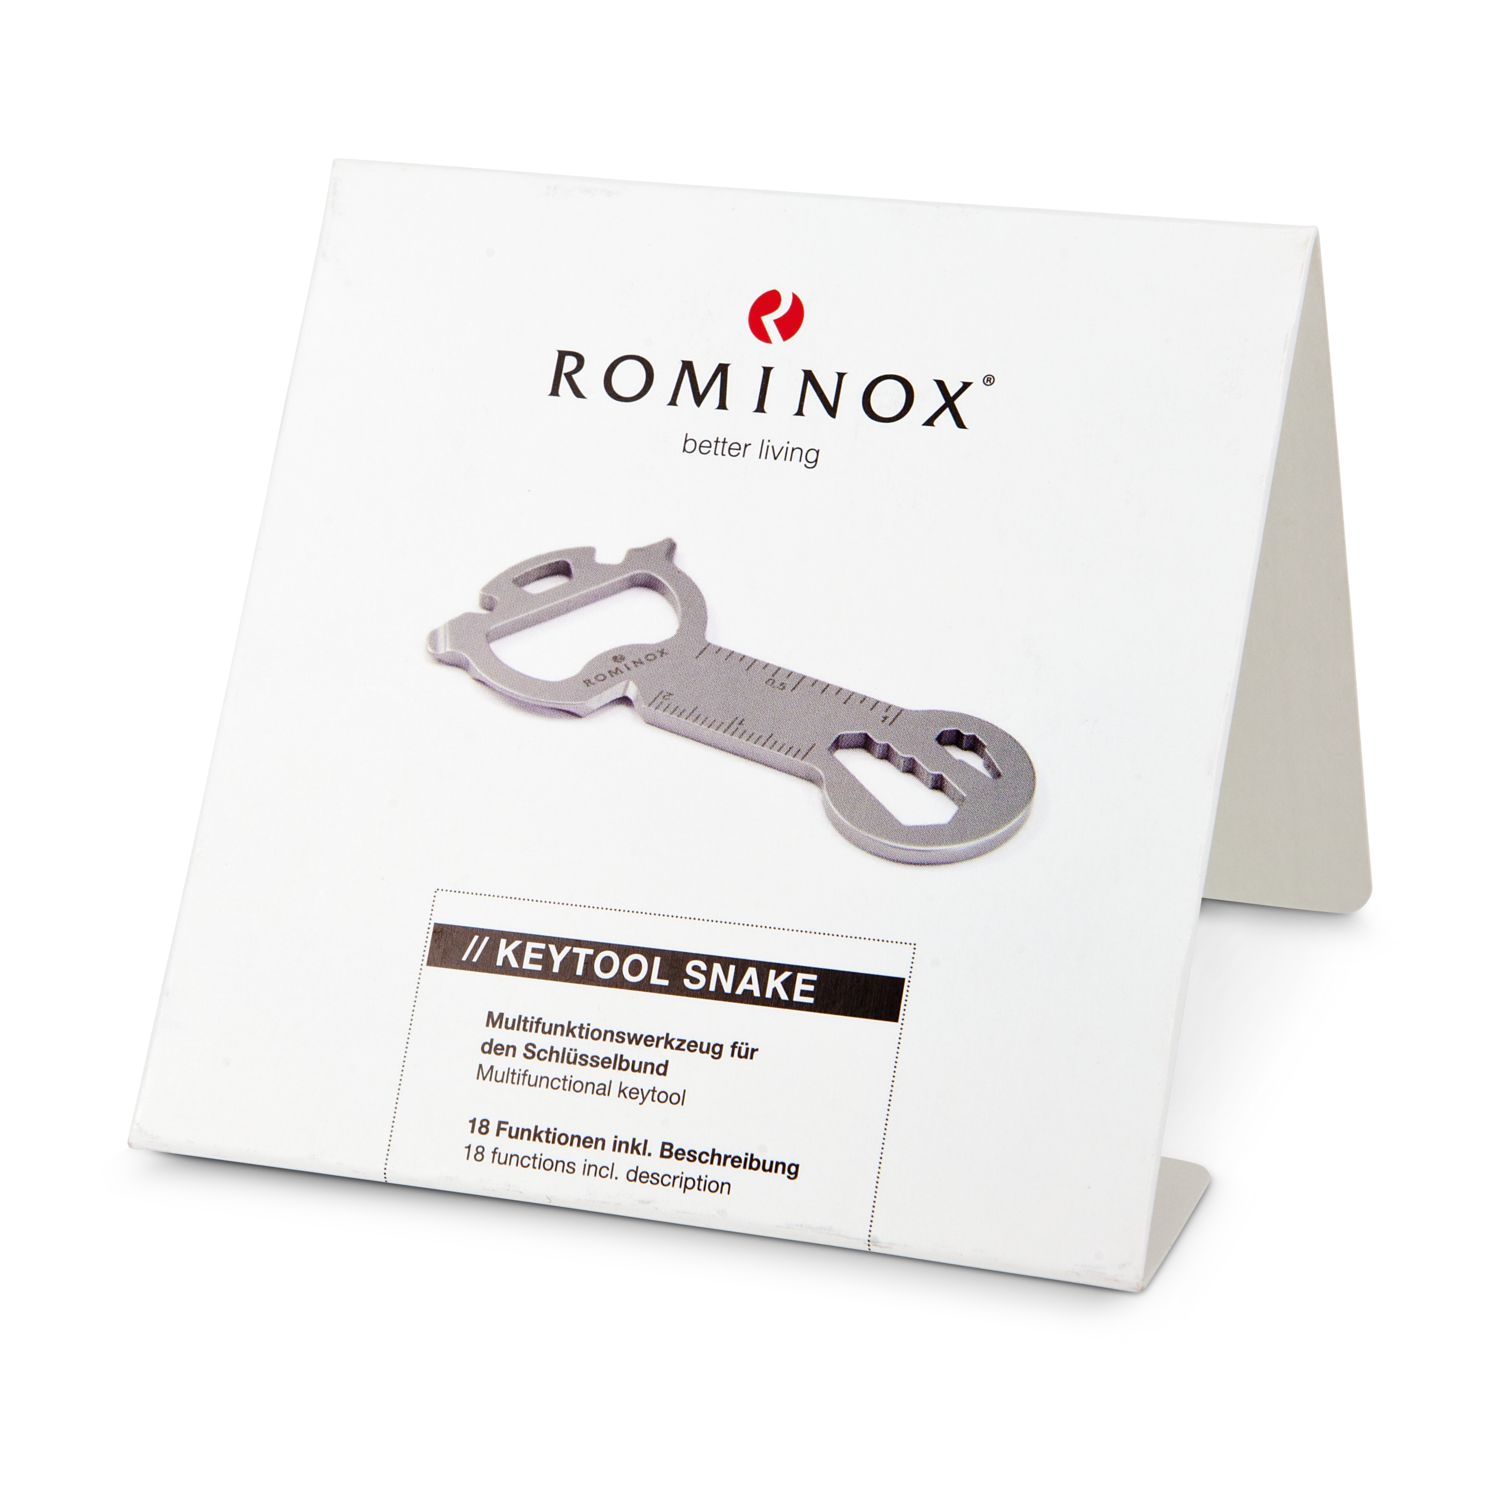 ROMINOX® Key Tool Snake (18 Funktionen) Viel Glück 2K2109c